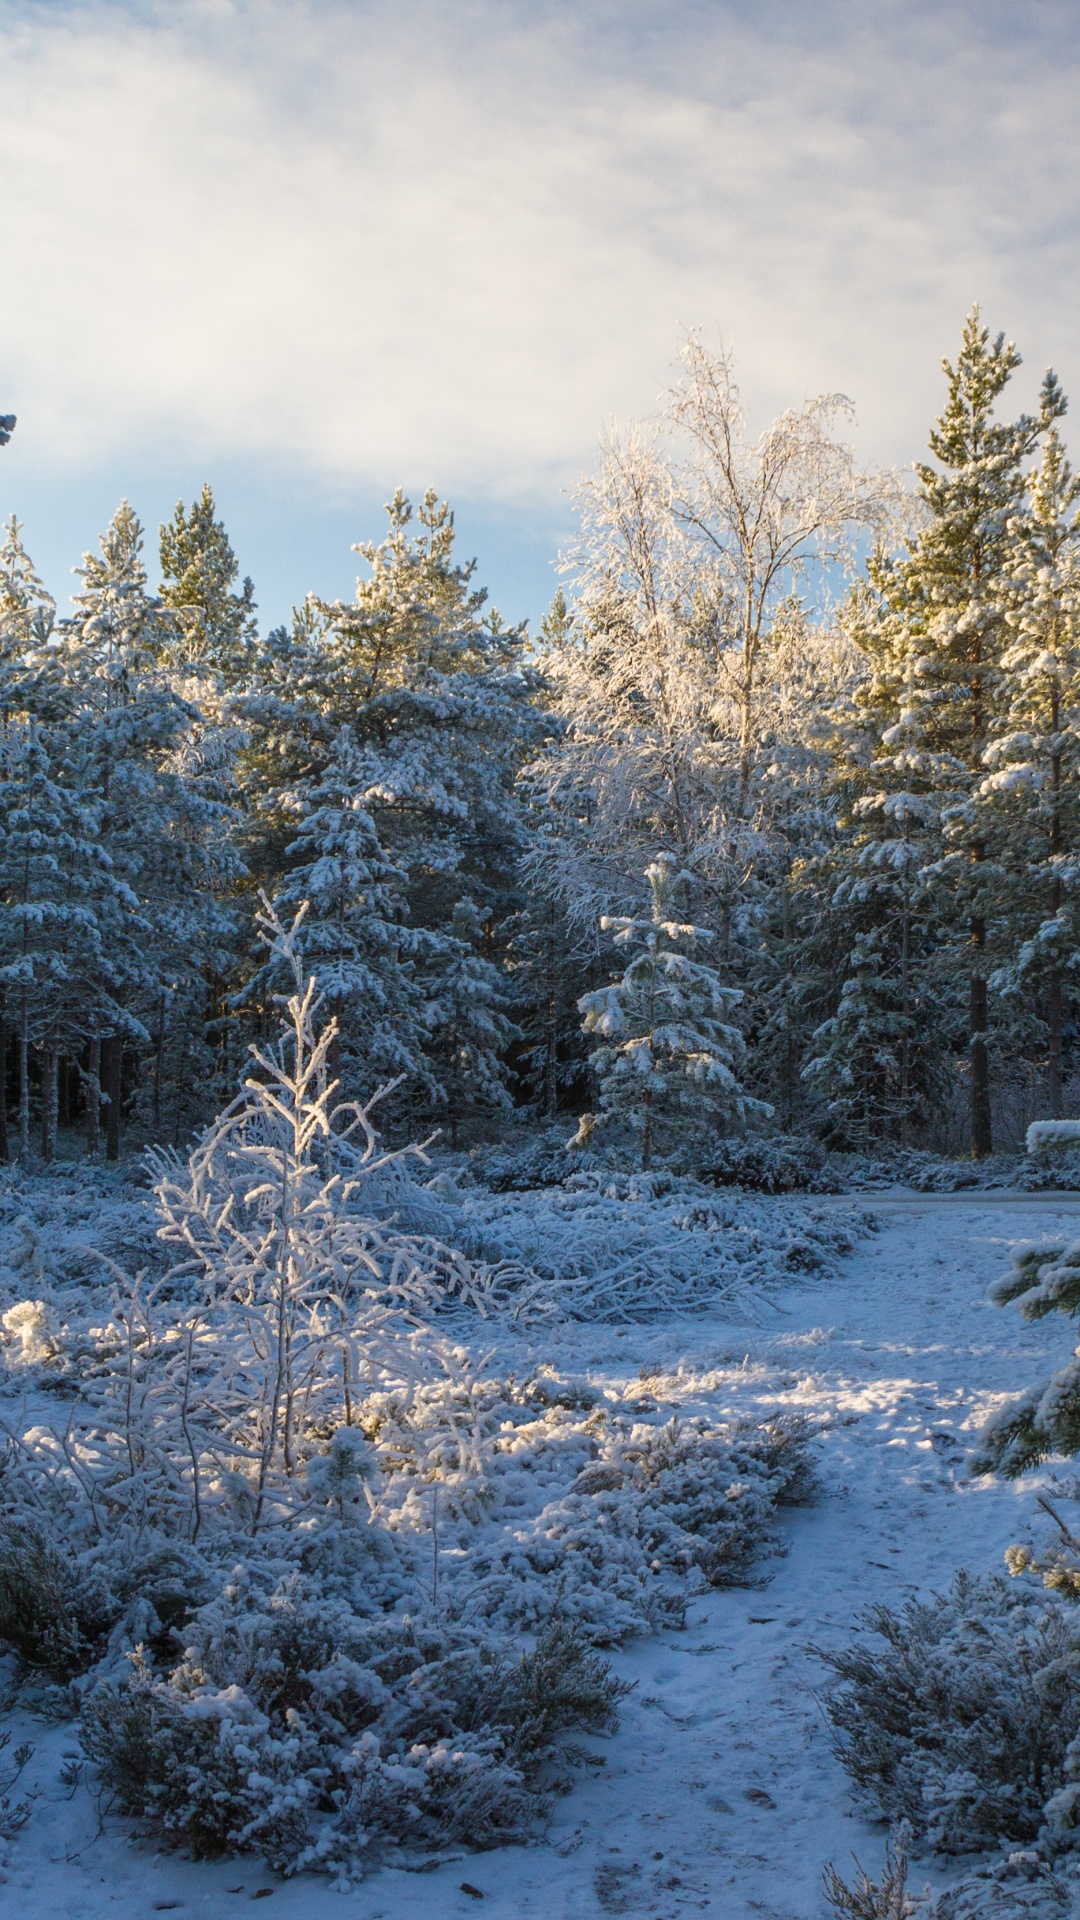 针叶树, 冬天, 森林, 冻结, 荒野 壁纸 1080x1920 允许